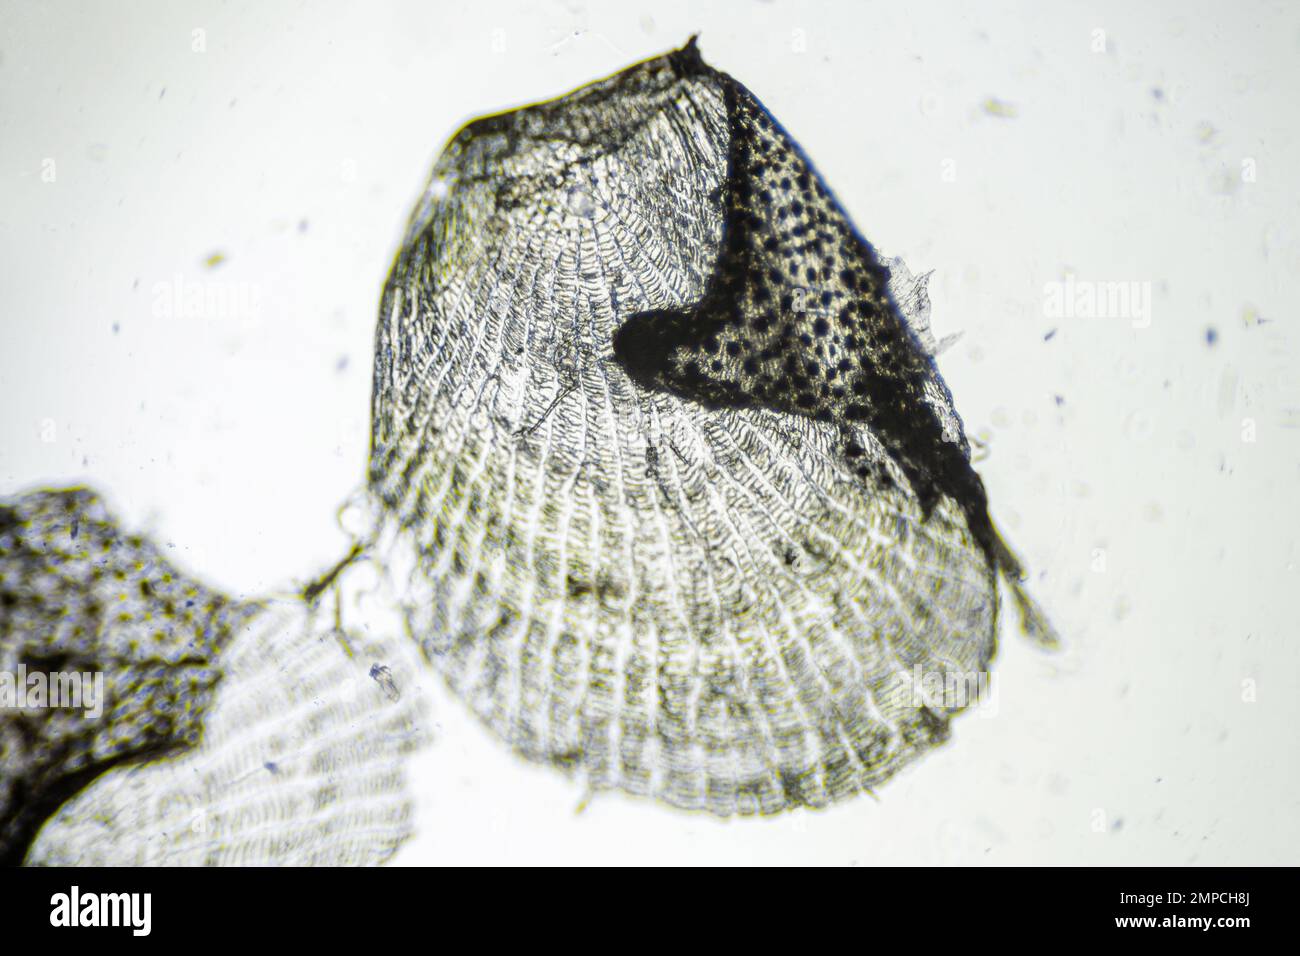 https://c8.alamy.com/comp/2MPCH8J/natural-marine-fish-scale-under-a-microscope-fish-scale-close-up-2MPCH8J.jpg